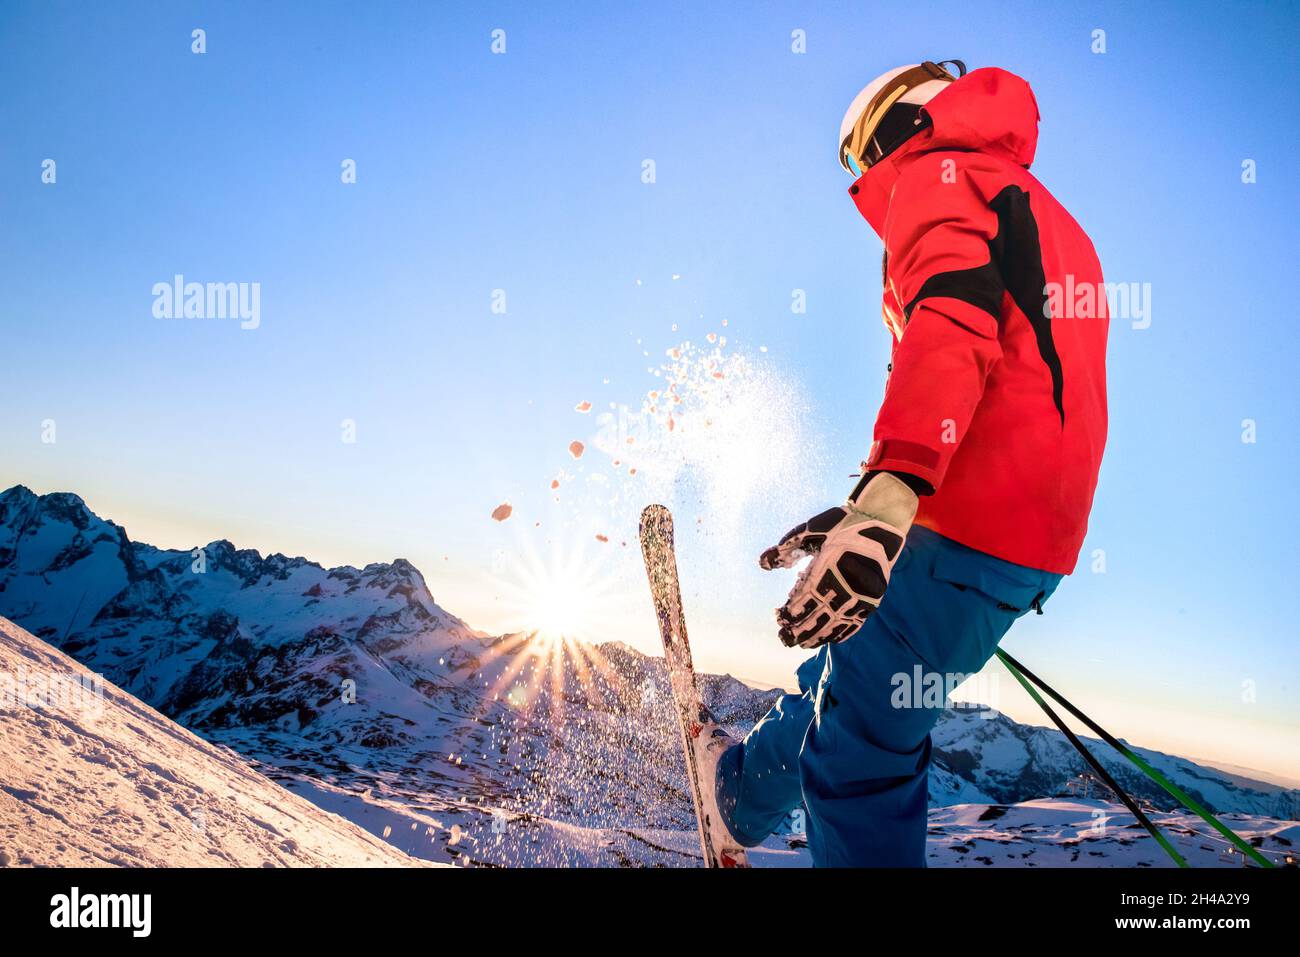 Profi-Skifahrer bei Sonnenuntergang im Erholungsmoment im skigebiet der französischen alpen - Wintersport-Konzept mit Abenteuermann auf der Bergspitze, der bereit ist, hinunter zu fahren Stockfoto